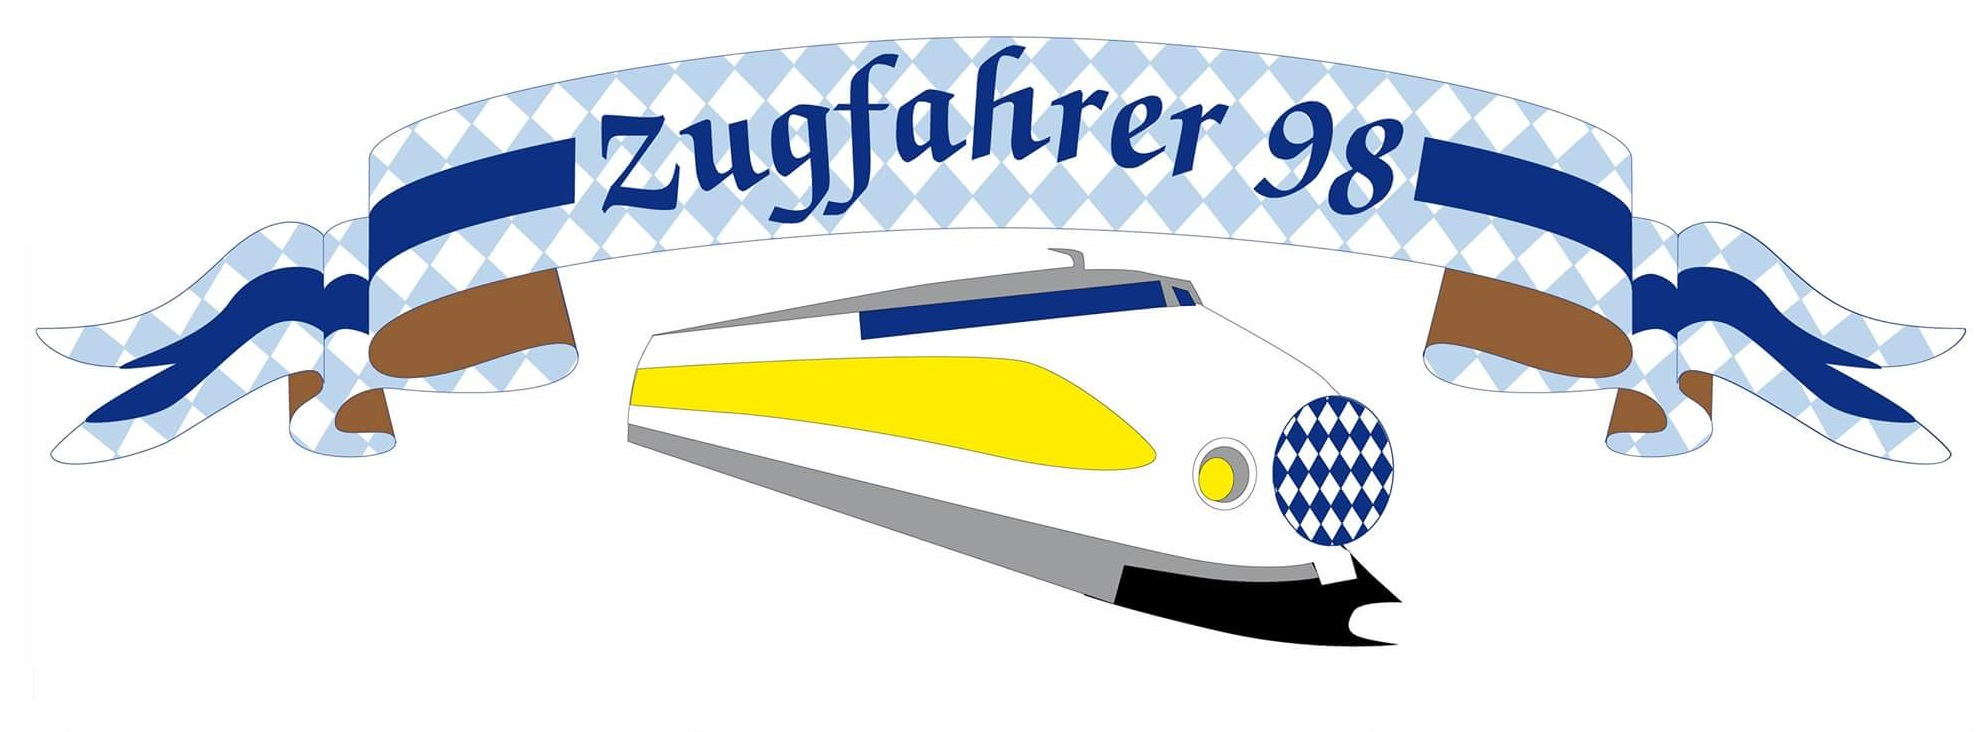 Zugfahrer98 Logo